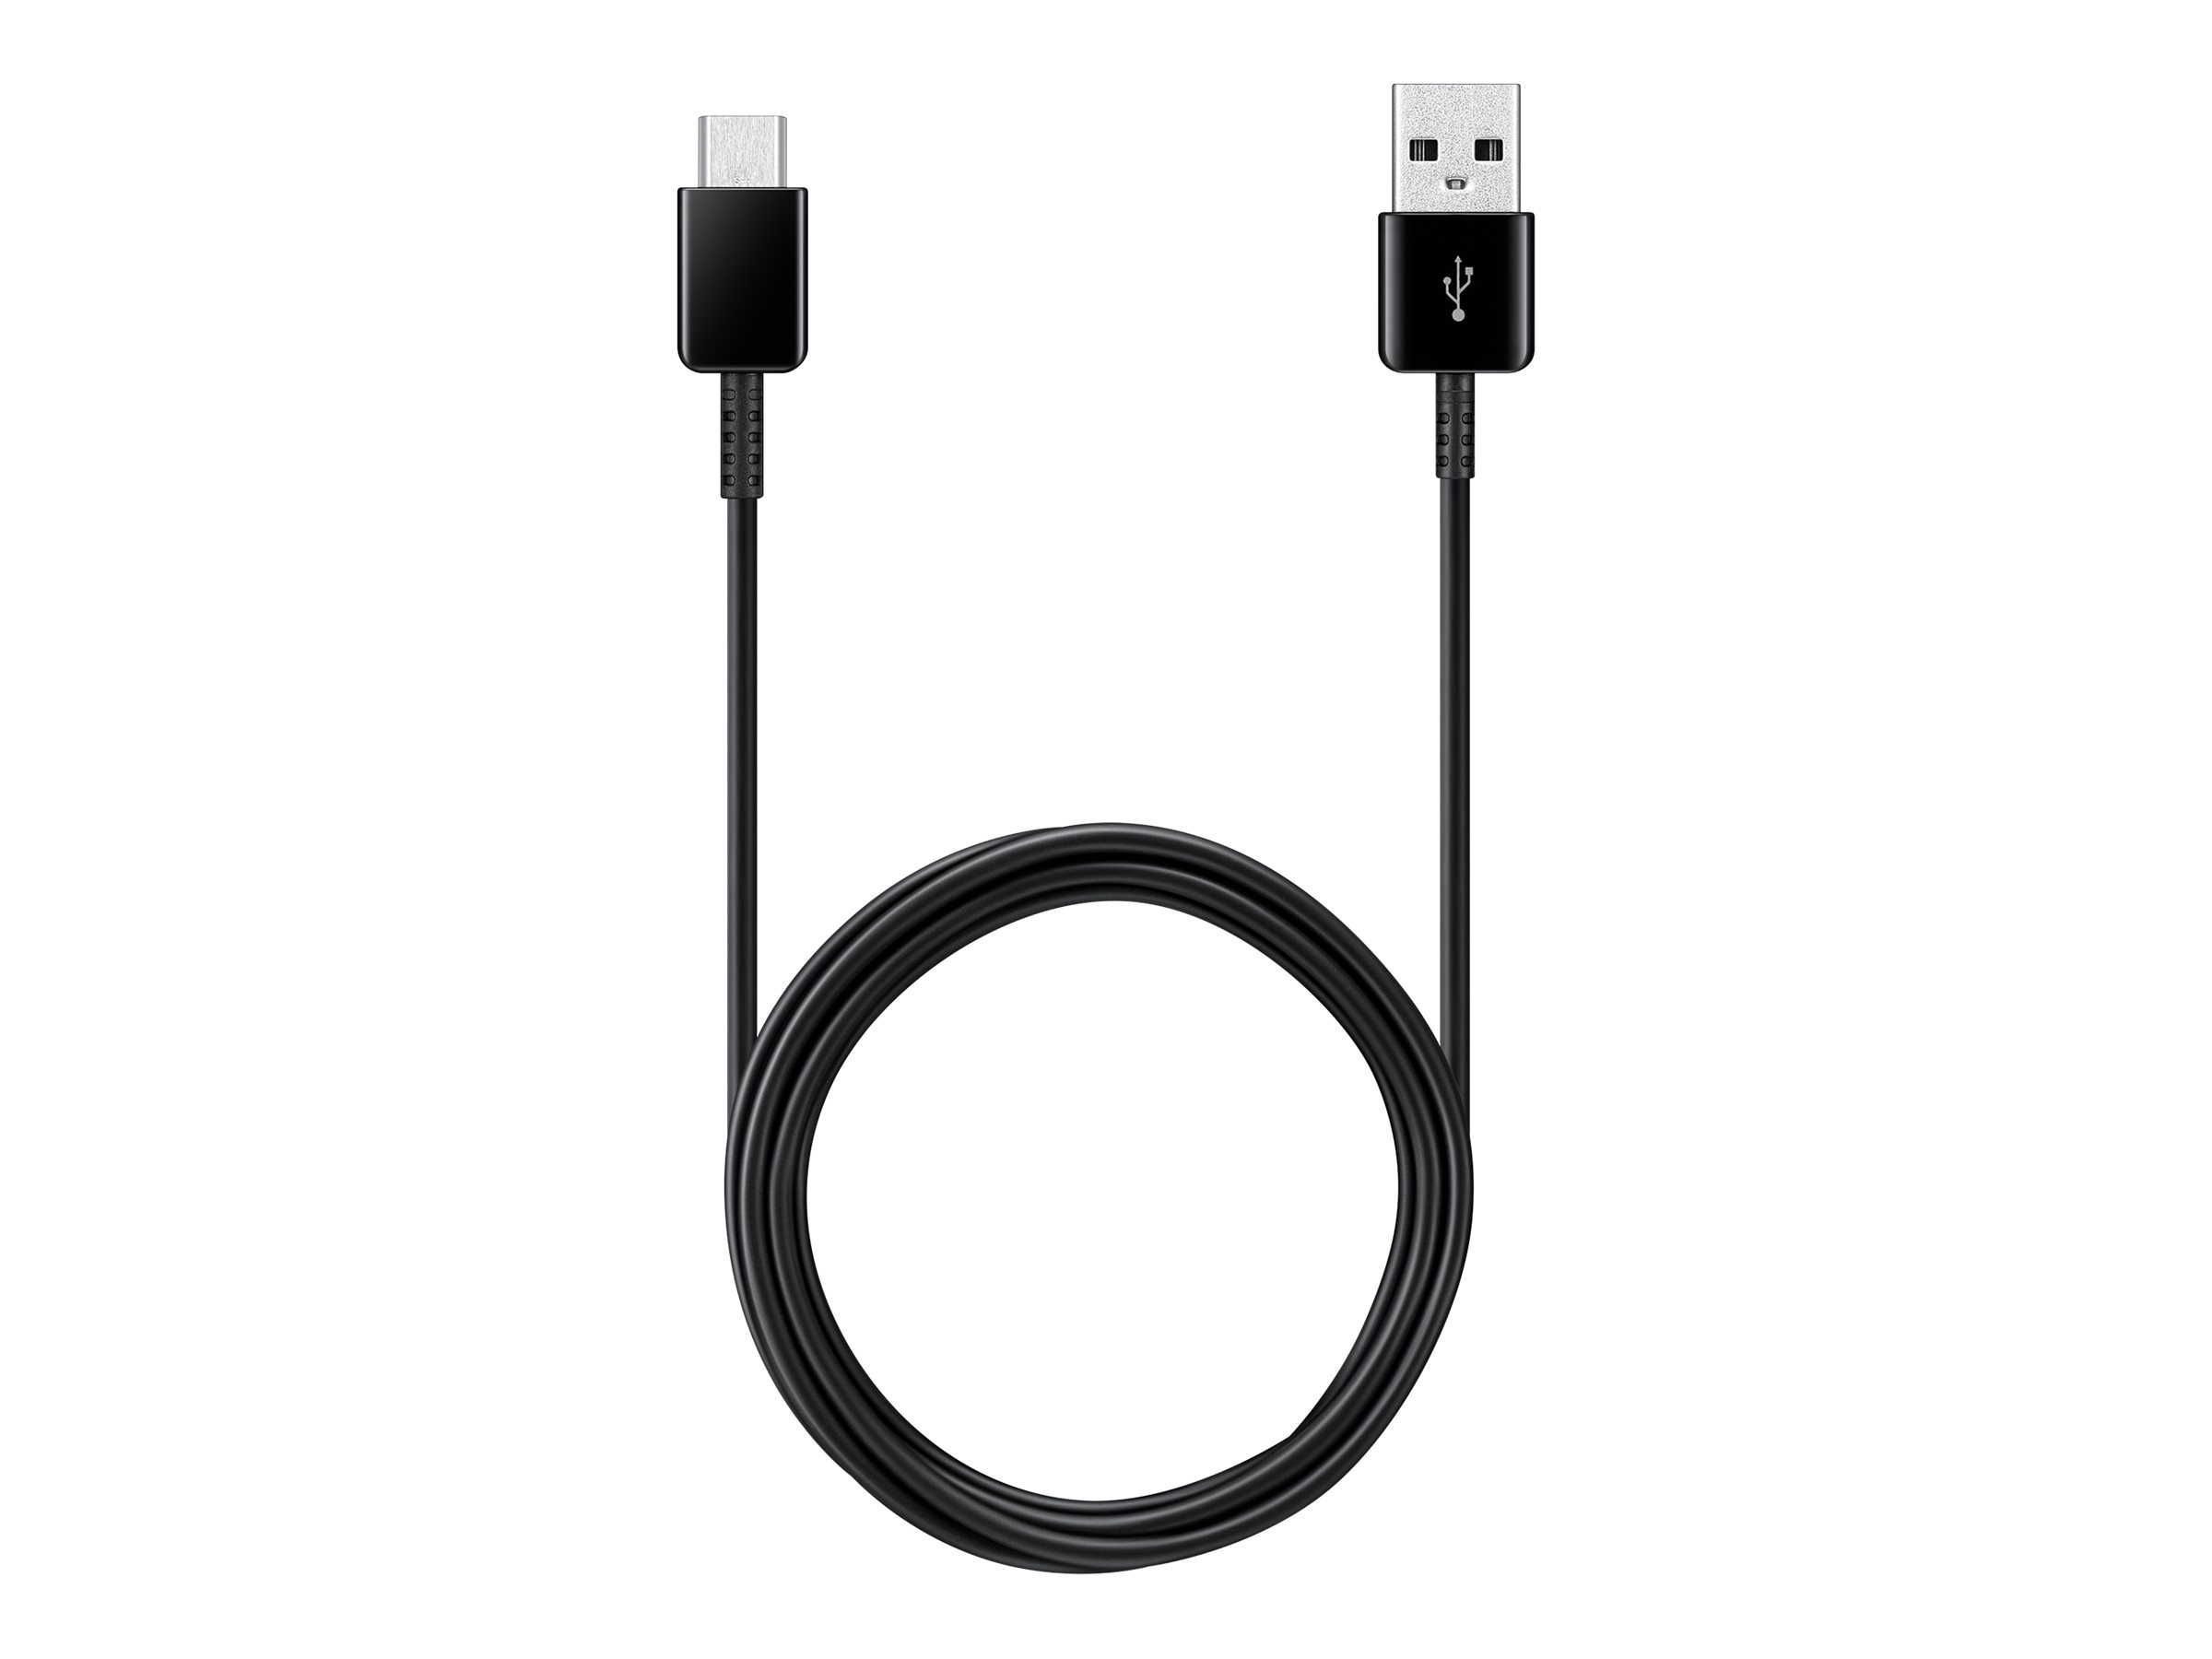 Samsung EP-DG930 - USB-Kabel - USB (M) zu 24 pin USB-C (M) - USB 2.0 - 1.5 m - Schwarz